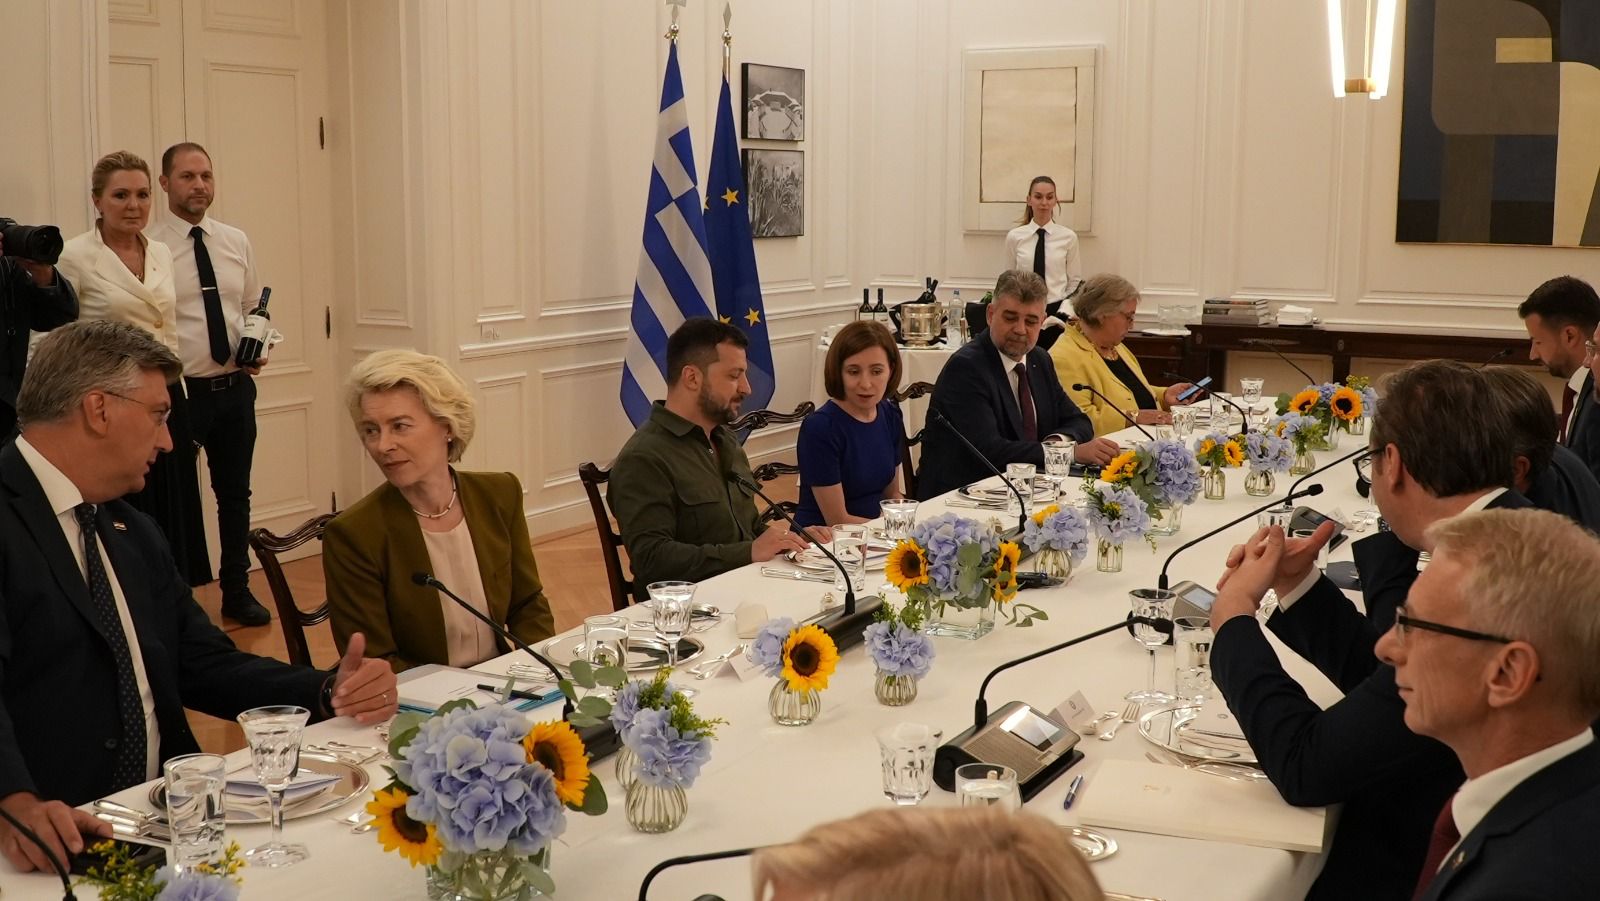 ΦΩΤΟ Η συνάντηση της Αθήνας.  Maia Sandu, μεταξύ Zelenski και Ciolacu.  Ο πρωθυπουργός της Ρουμανίας, με το χέρι στην τσέπη, συνομιλώντας με τον πρωθυπουργό της Ελλάδας